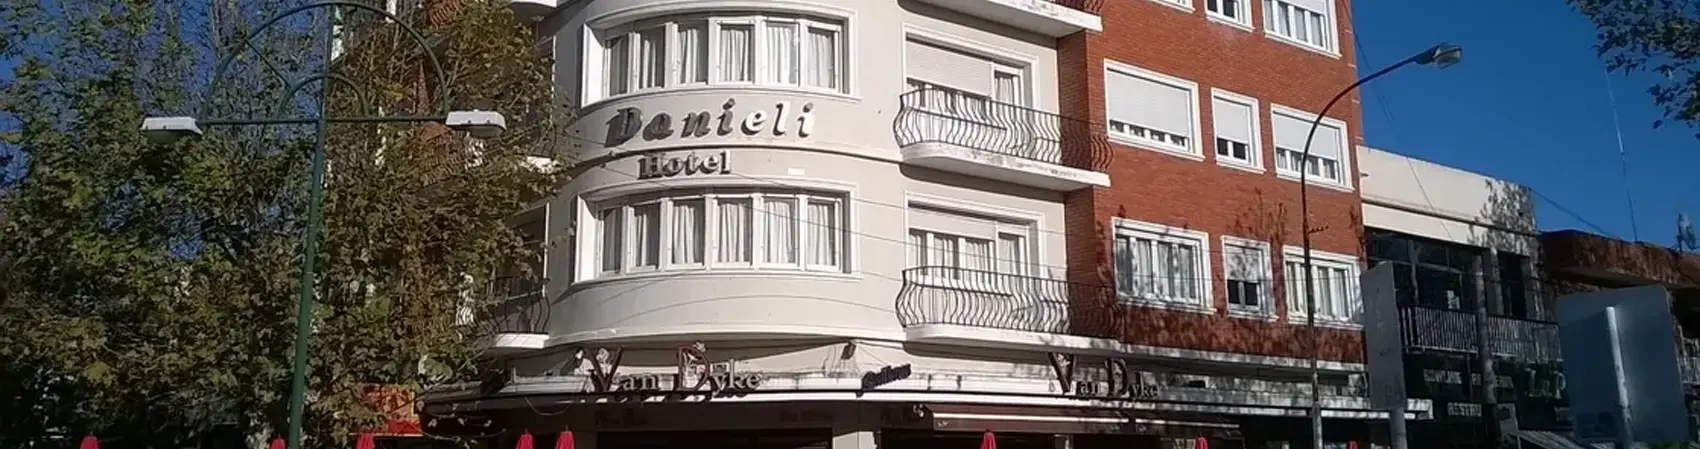 Hotel en Miramar. El Hotel Danieli lo espera en sus vacaciones